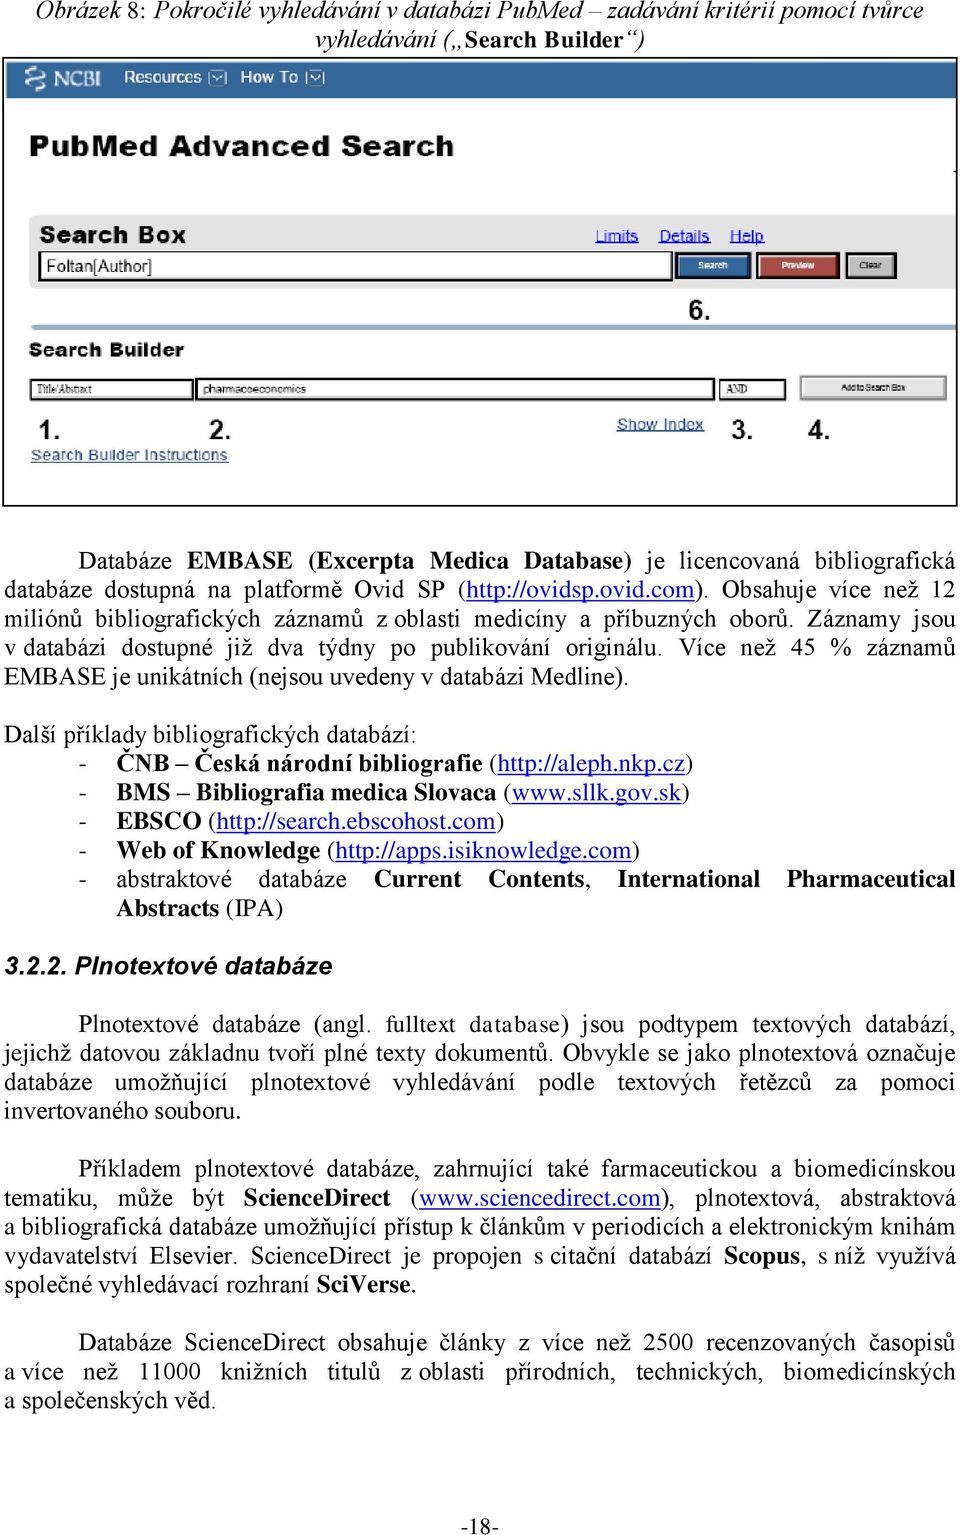 Záznamy jsou v databázi dostupné jiţ dva týdny po publikování originálu. Více neţ 45 % záznamů EMBASE je unikátních (nejsou uvedeny v databázi Medline).